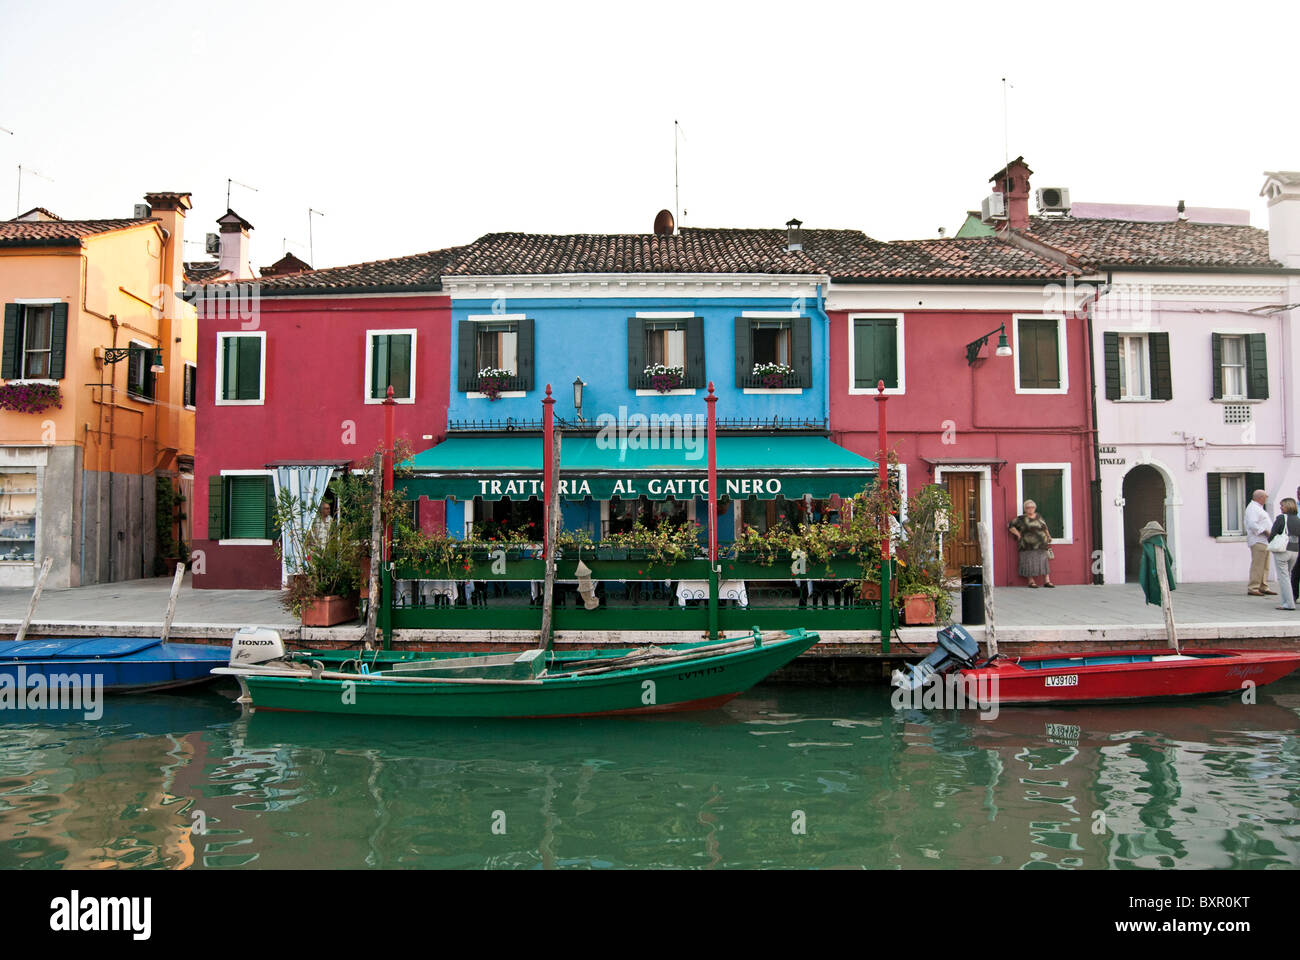 tavern "Il Gatto Nero", Burano, Venice Italy Stock Photo - Alamy